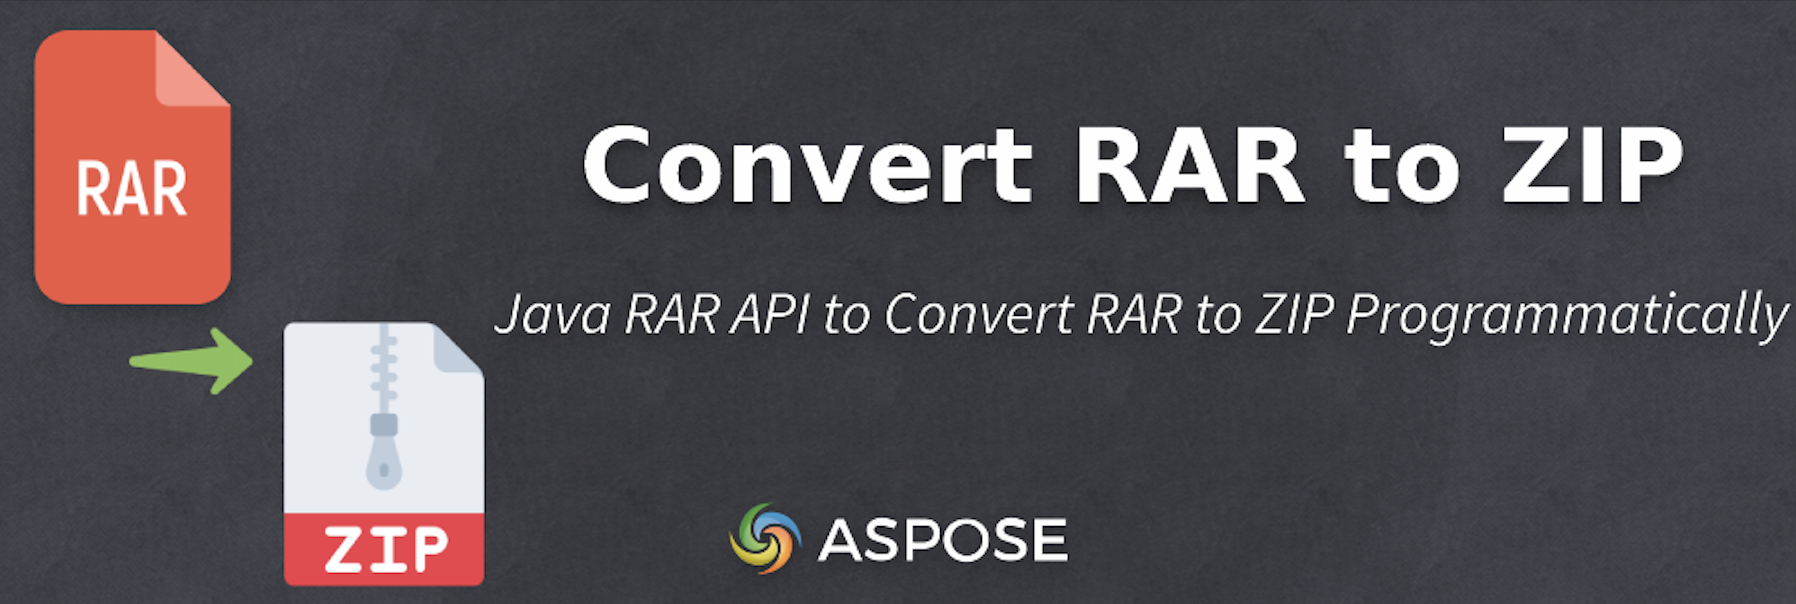 Konvertera RAR till ZIP i Java - Java RAR API